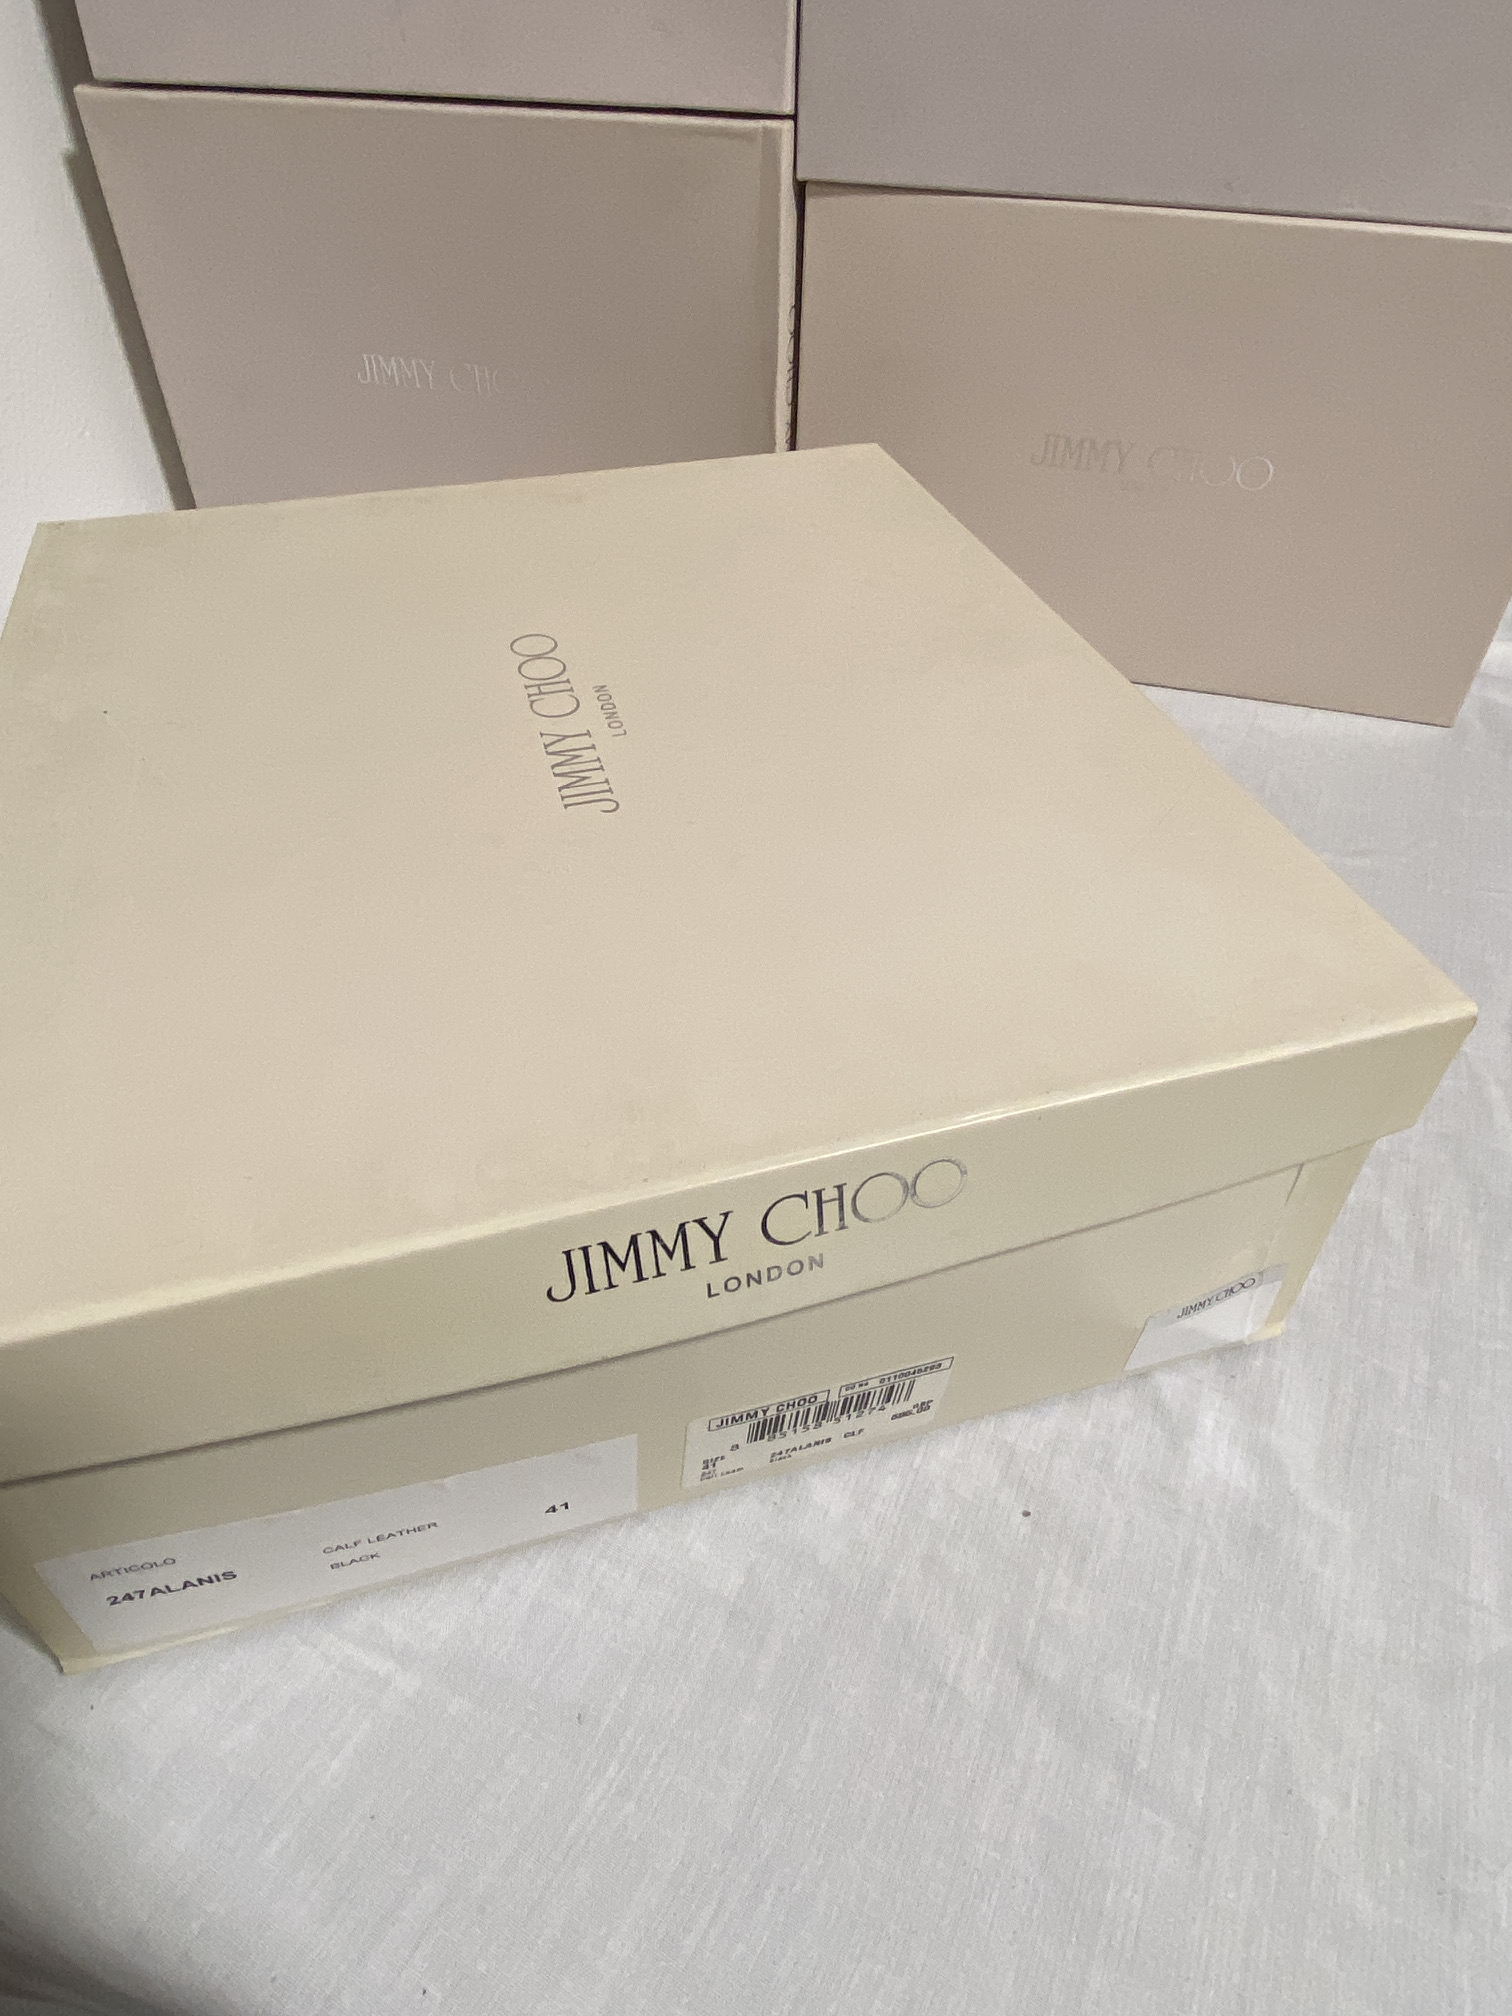 JIMMY CHOO (LONDON) LADIES SHOES / FOOTWEAR (BOXED IN VGC) - Image 6 of 10